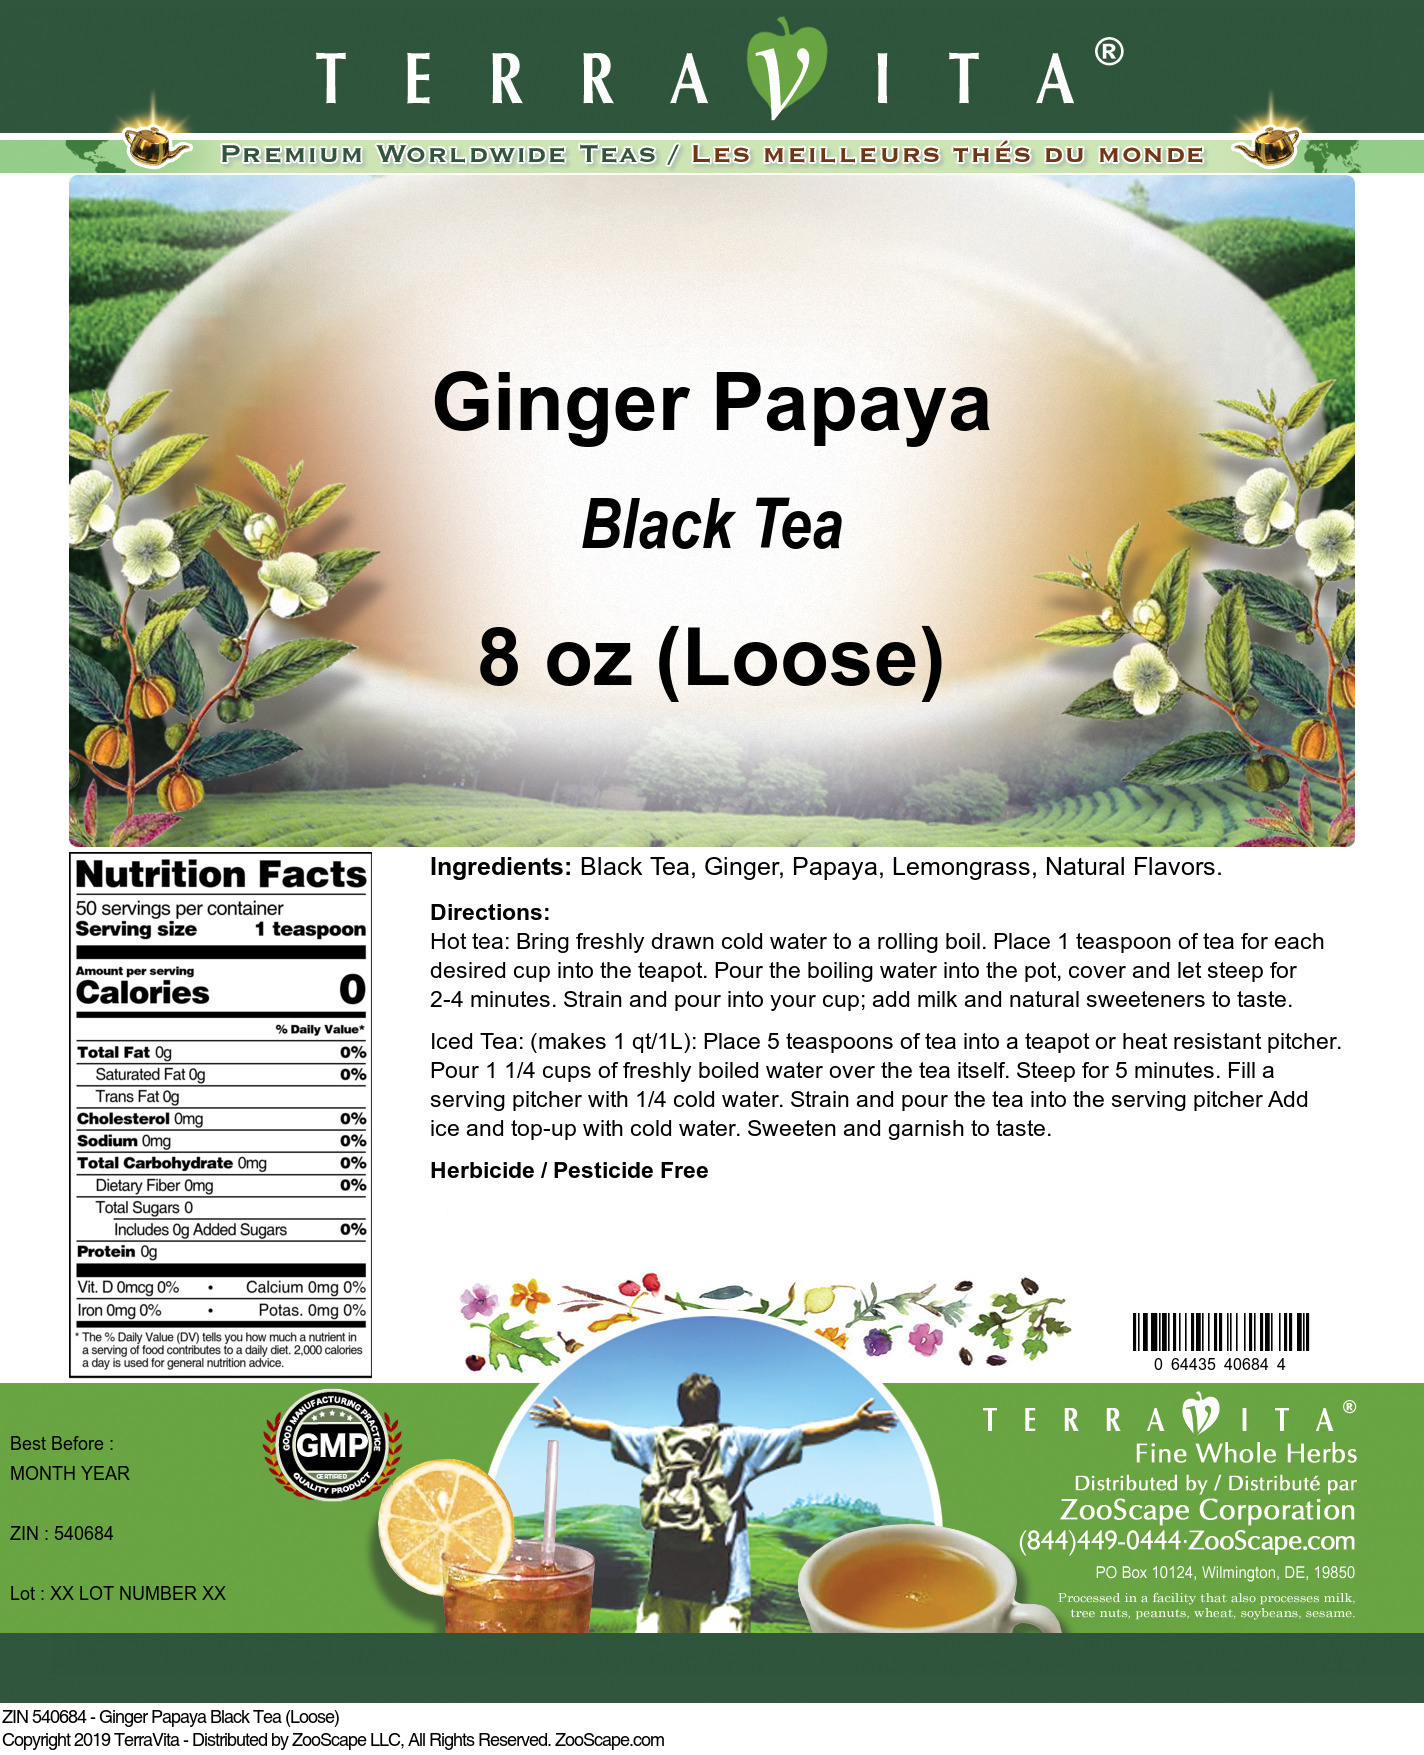 Ginger Papaya Black Tea (Loose) - Label